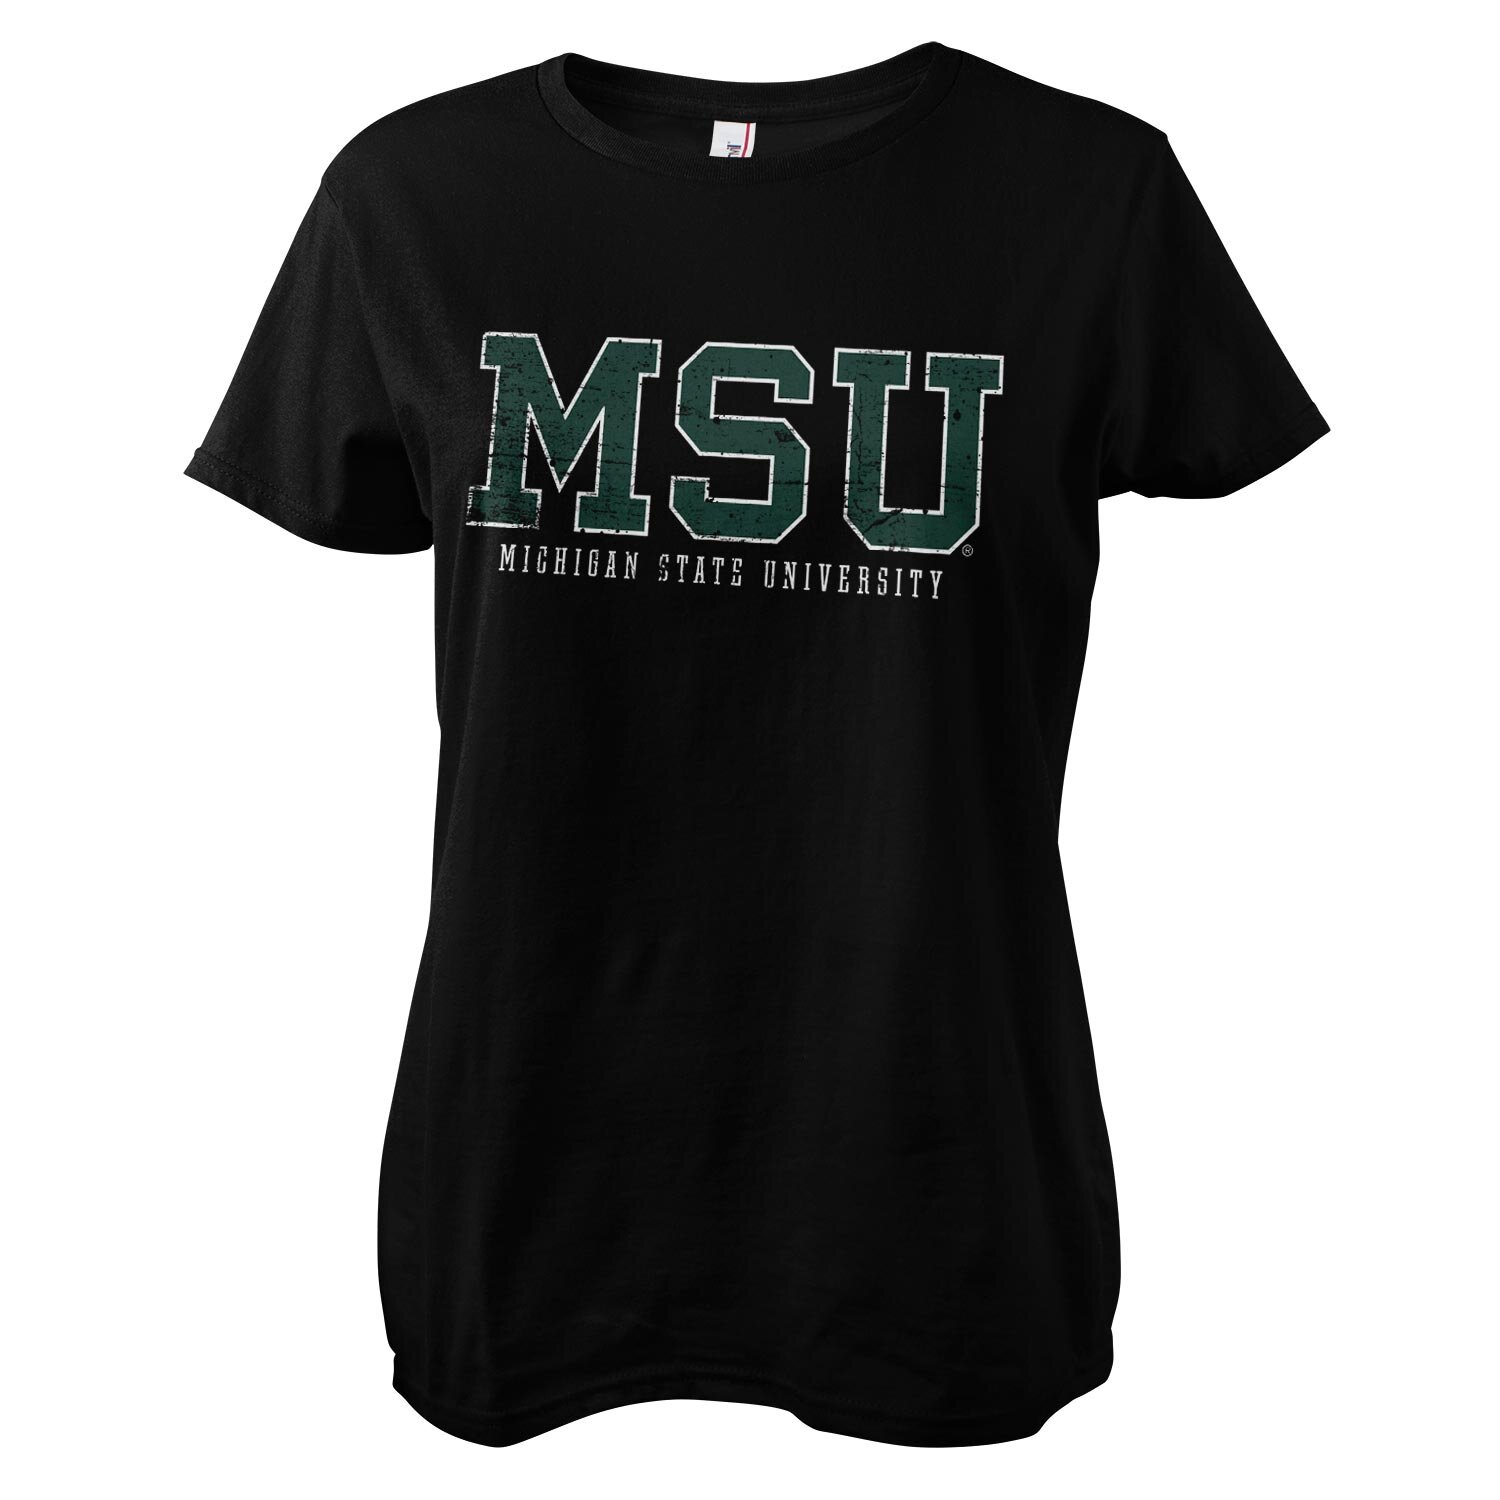 MSU - Michigan State University Girly Tee